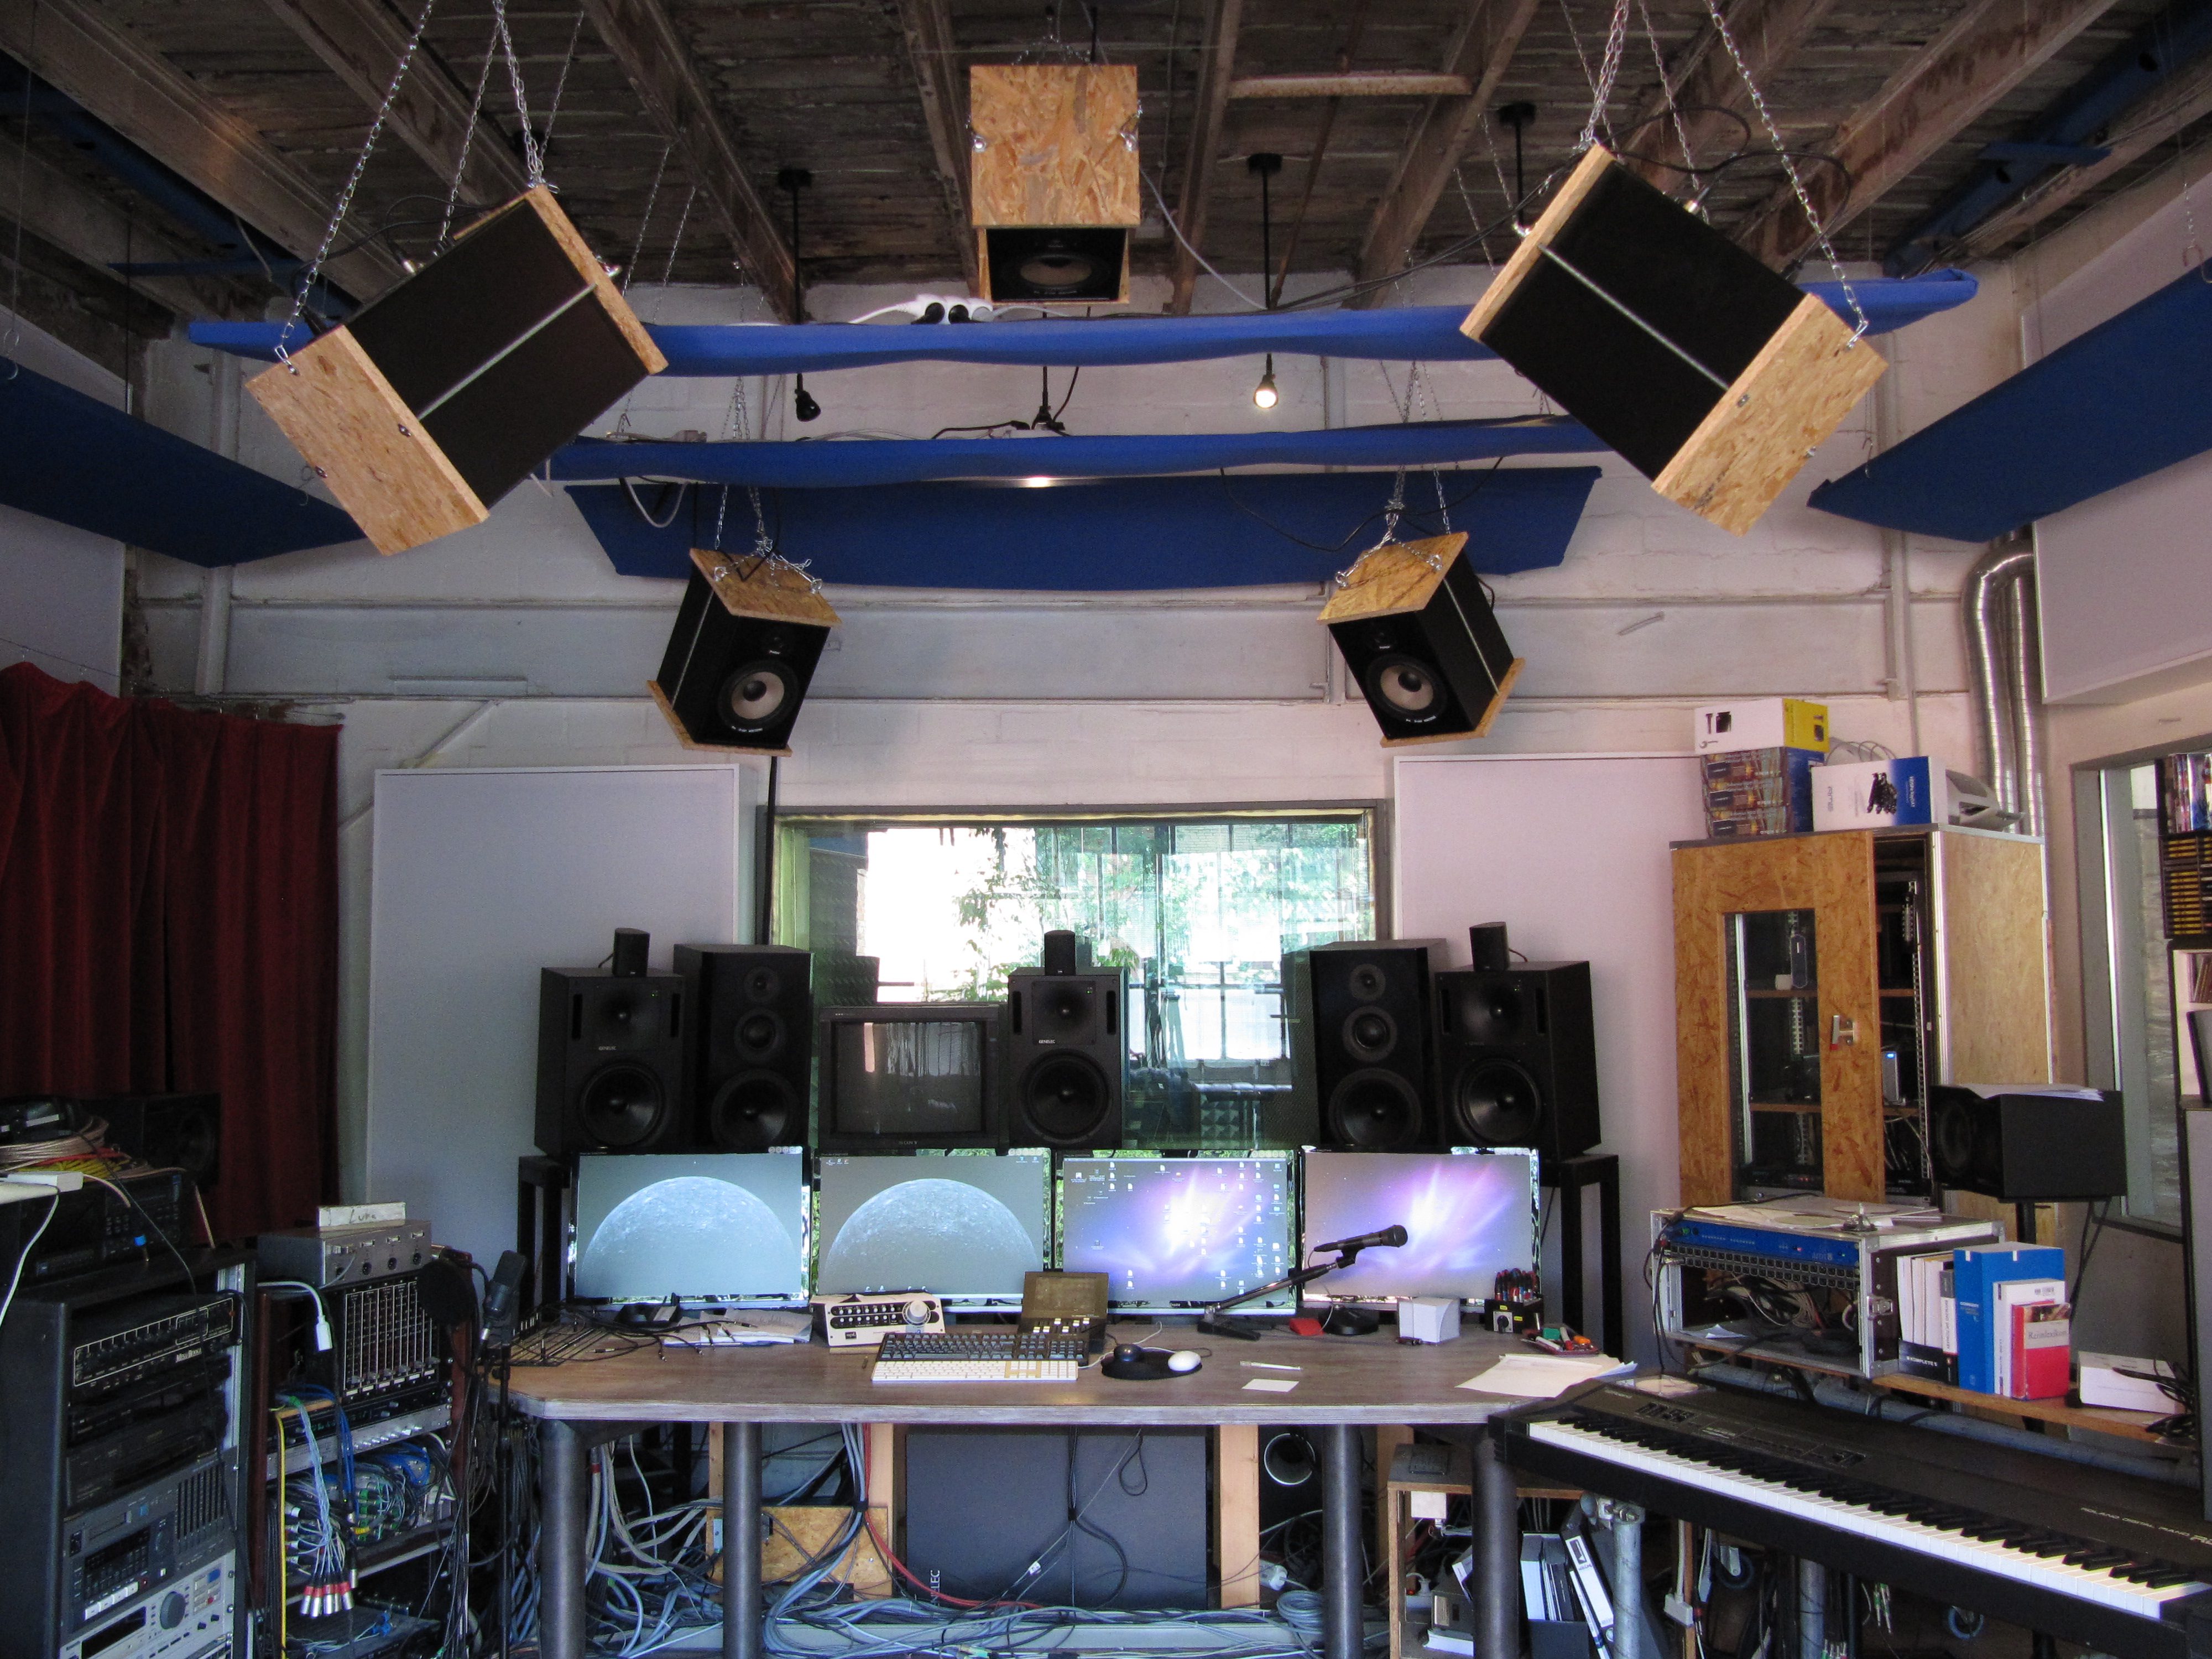 Eines der ersten 3D/Immersive Audio Studios in Deutschland: Luna-Studio Hamburg. Hier wurde der Spatial Audio Designer entwickelt. (Bild: New Audio Technology GmbH)